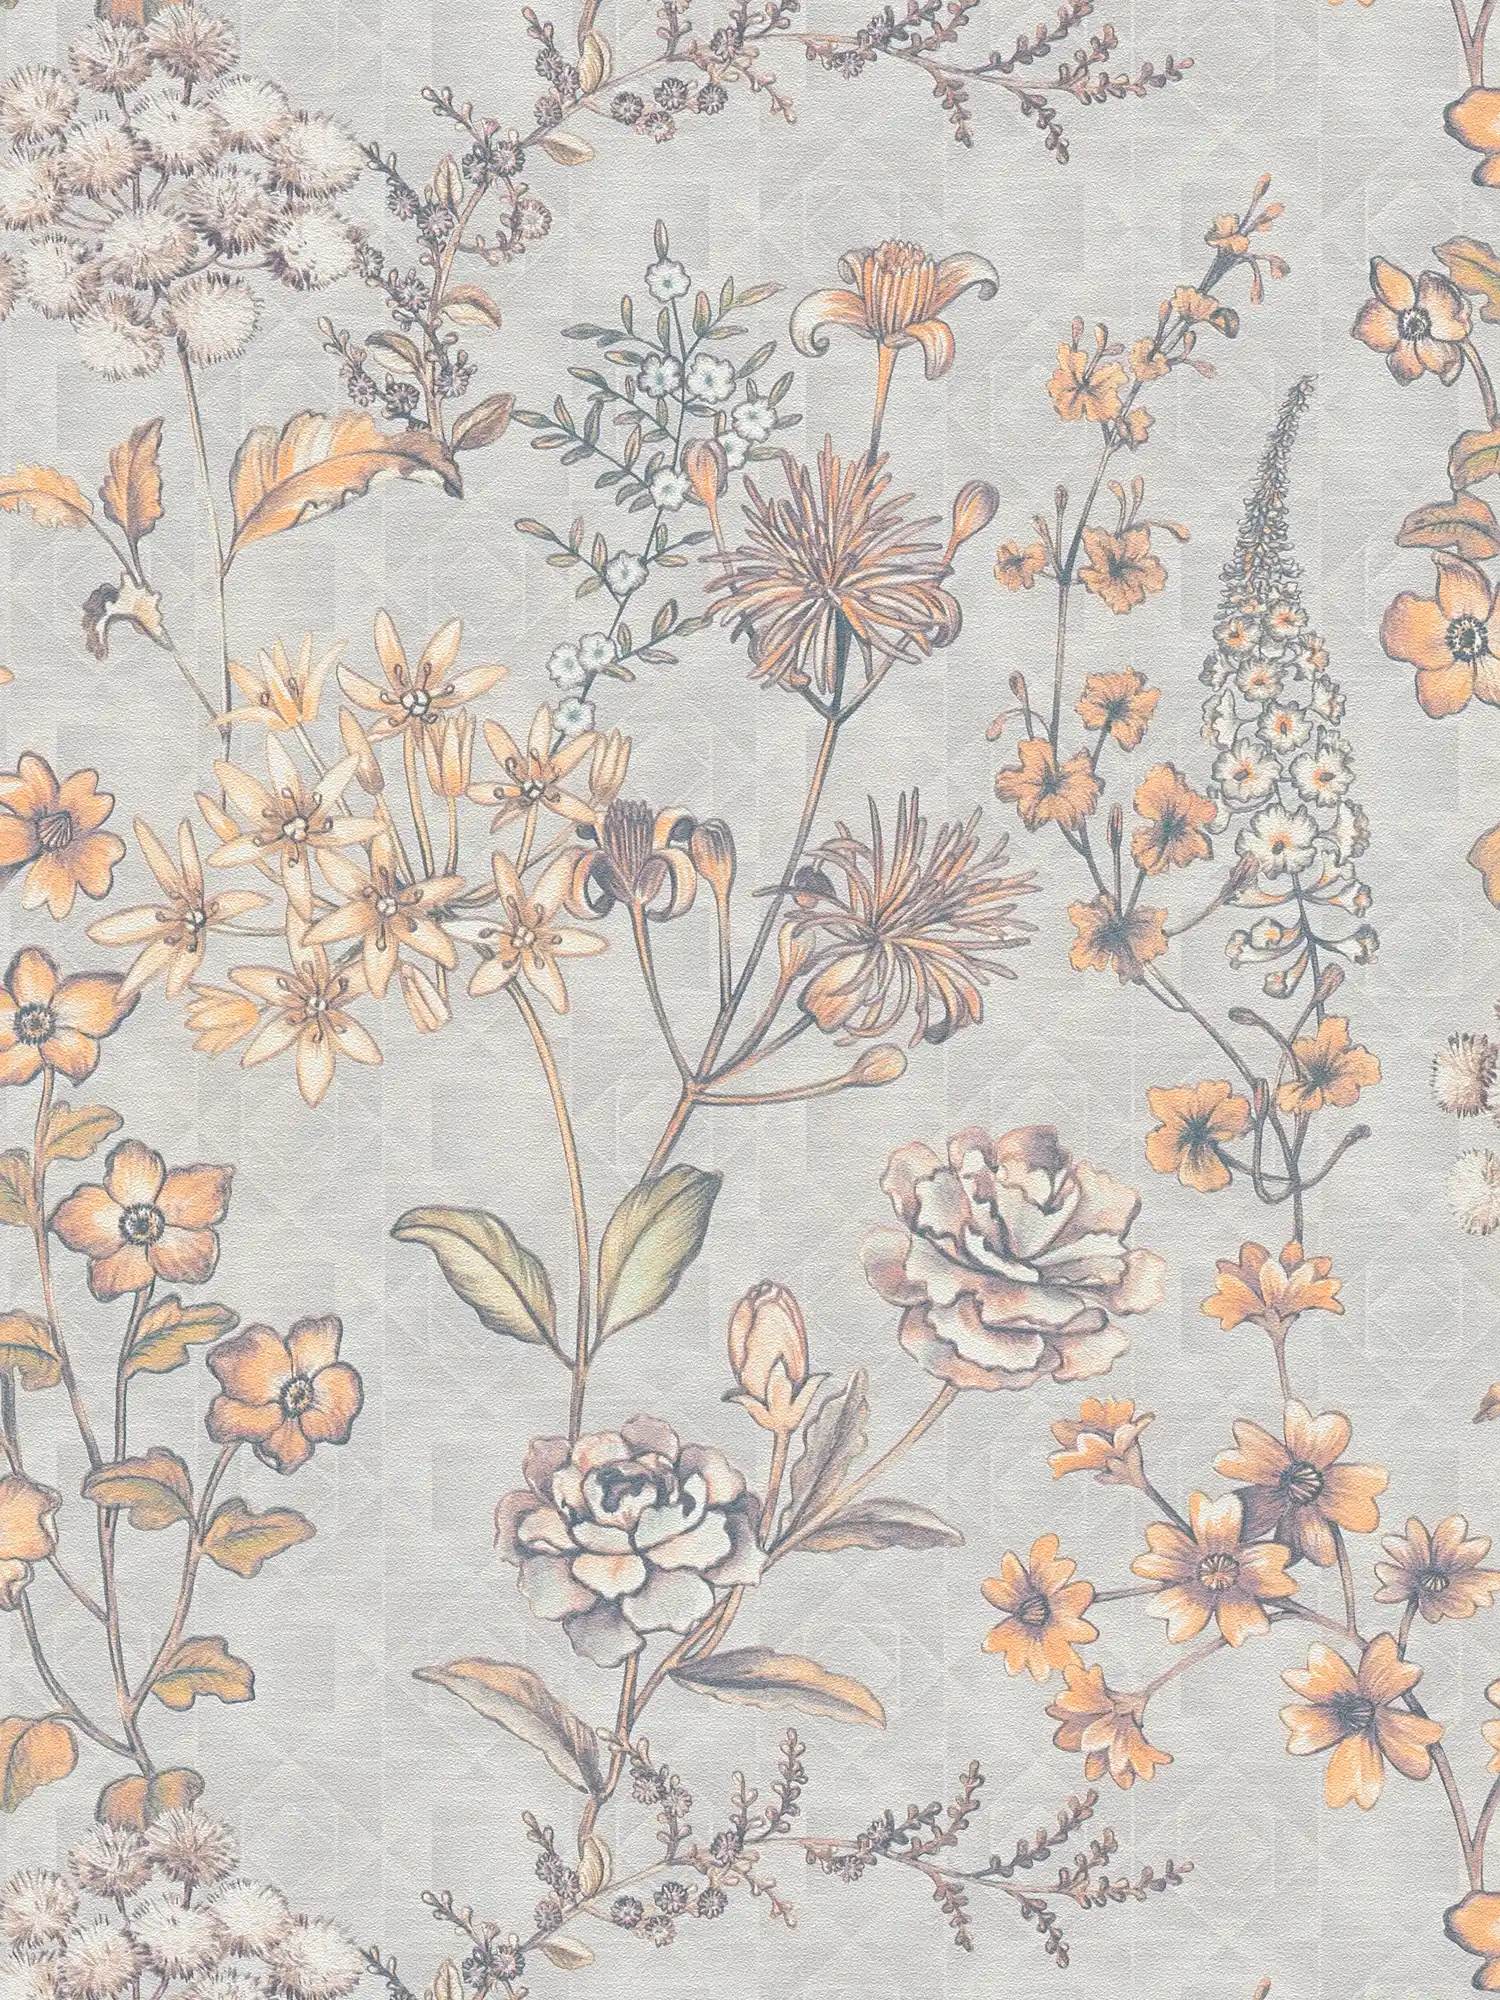 Papier peint intissé avec motif floral vintage - gris clair, orange, jaune
